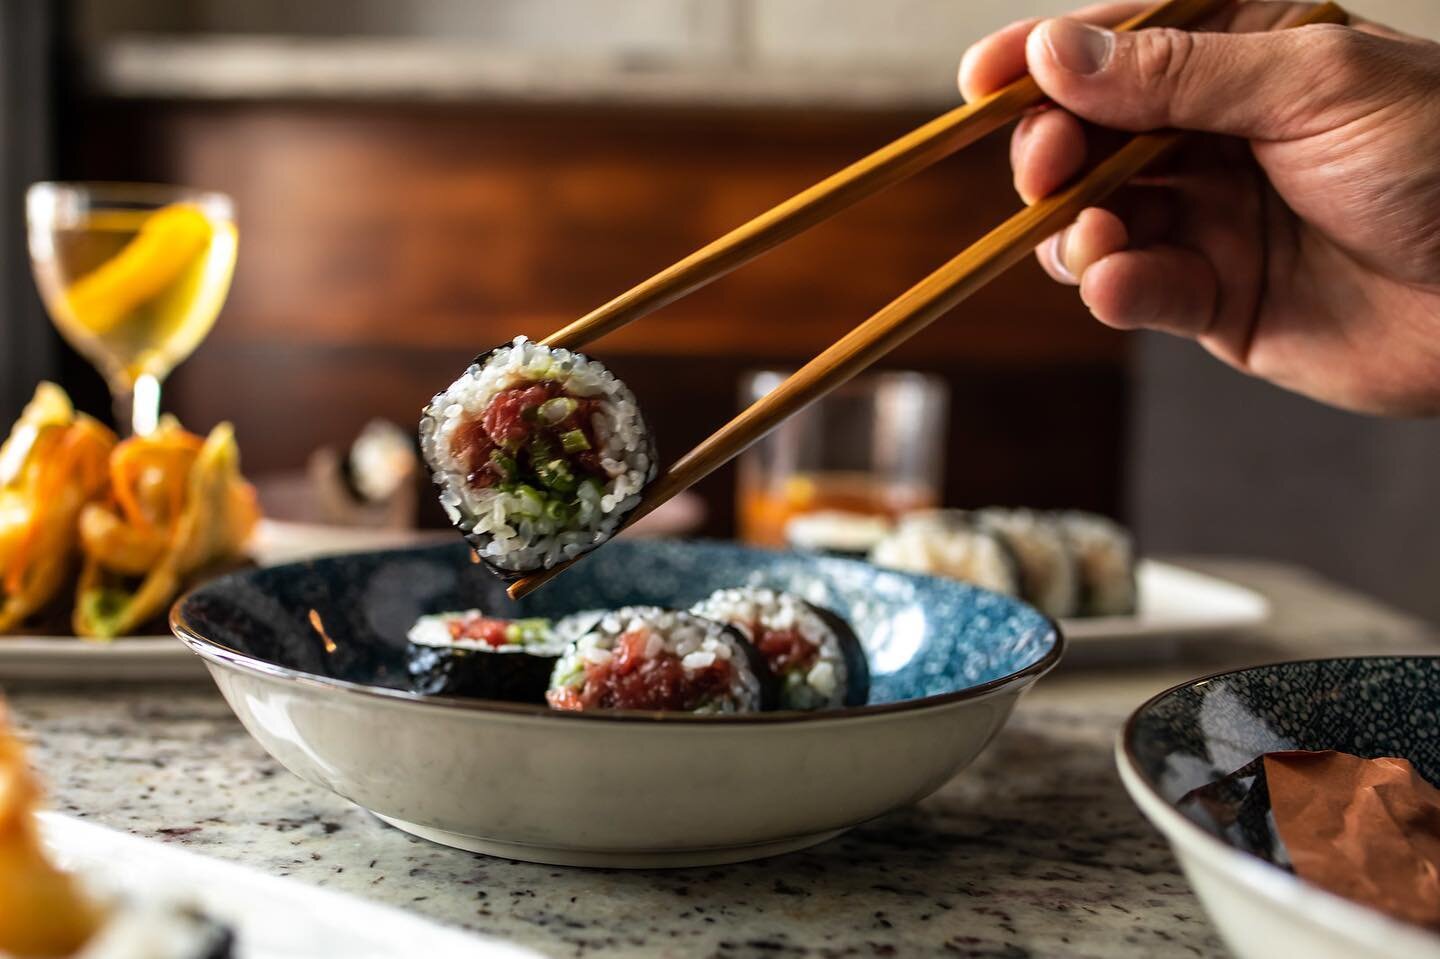 We can&rsquo;t wait for you to taste this 🍣
.
. 📸 @marencophoto 
.
#sushiwhisperer #philadelphia #fishtown #sushi #izakayabyyanaga #gluhospitality #tuna #spicytunaroll #cocktails #japanesefood